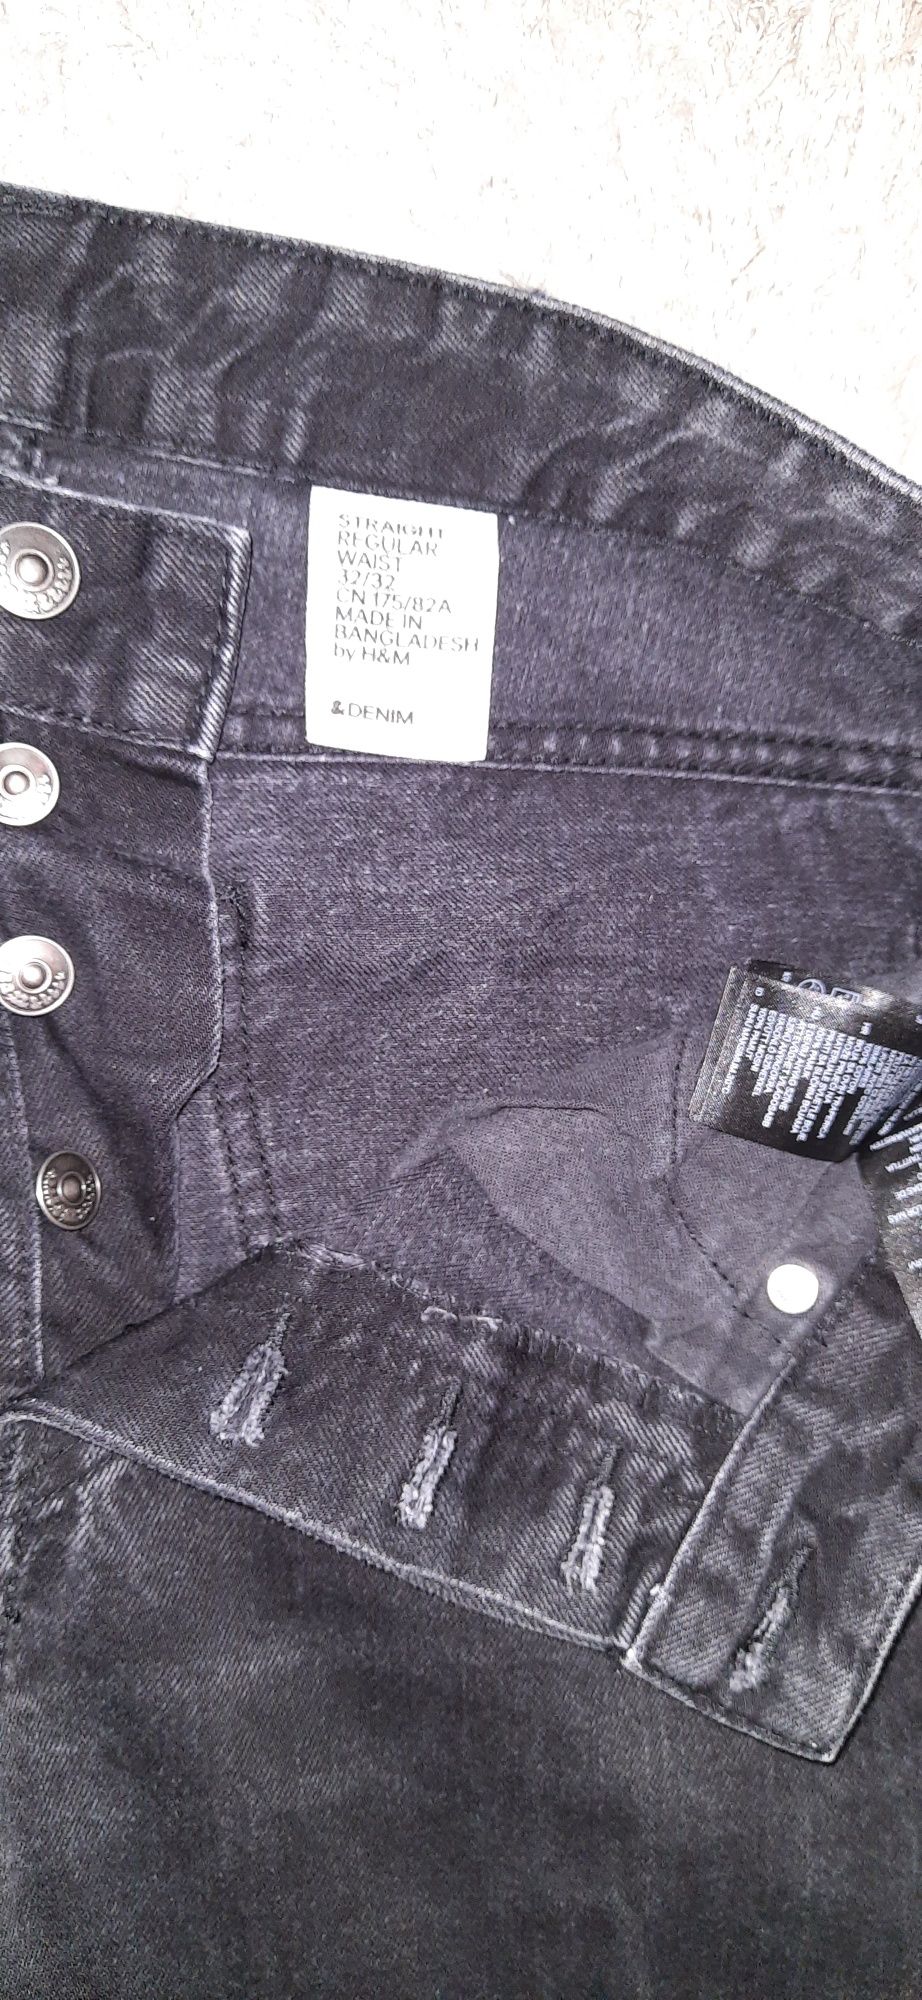 Męskie czarne jeansy spodnie H&M 32/32